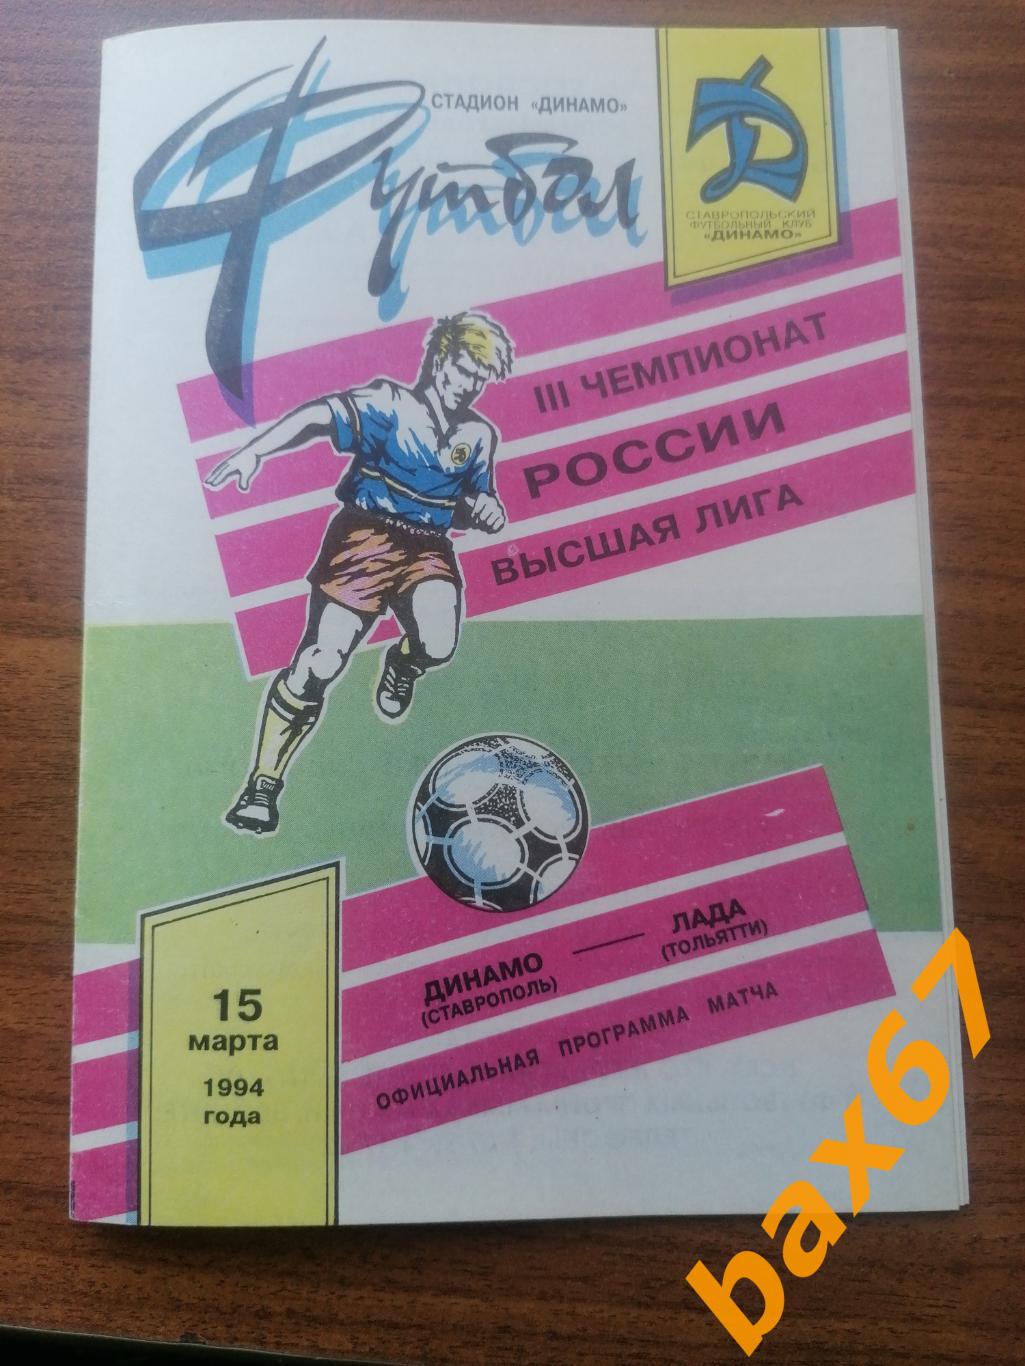 Динамо Ставрополь - Лада Тольятти 15.03.1994